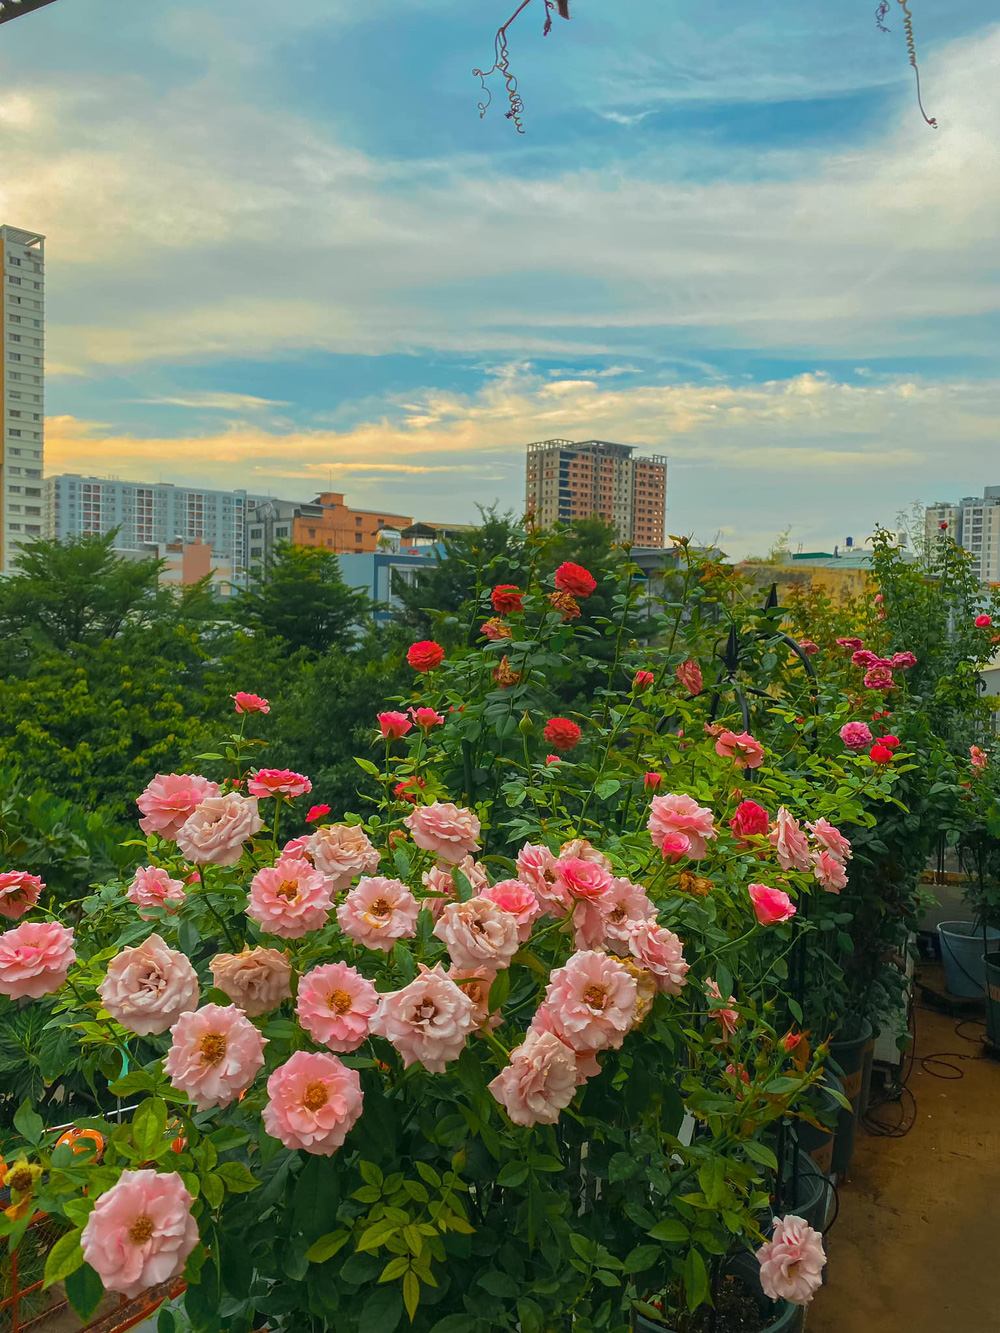 Vườn Hoa Hồng - Một không gian xanh tươi mát, những bông hoa hồng sáng màu rực rỡ, mùi hương thơm ngát lan tỏa khắp vườn. Hãy tham quan vườn hoa hồng để tận hưởng khoảnh khắc thư giãn, tăm tia hương vị của thiên nhiên.